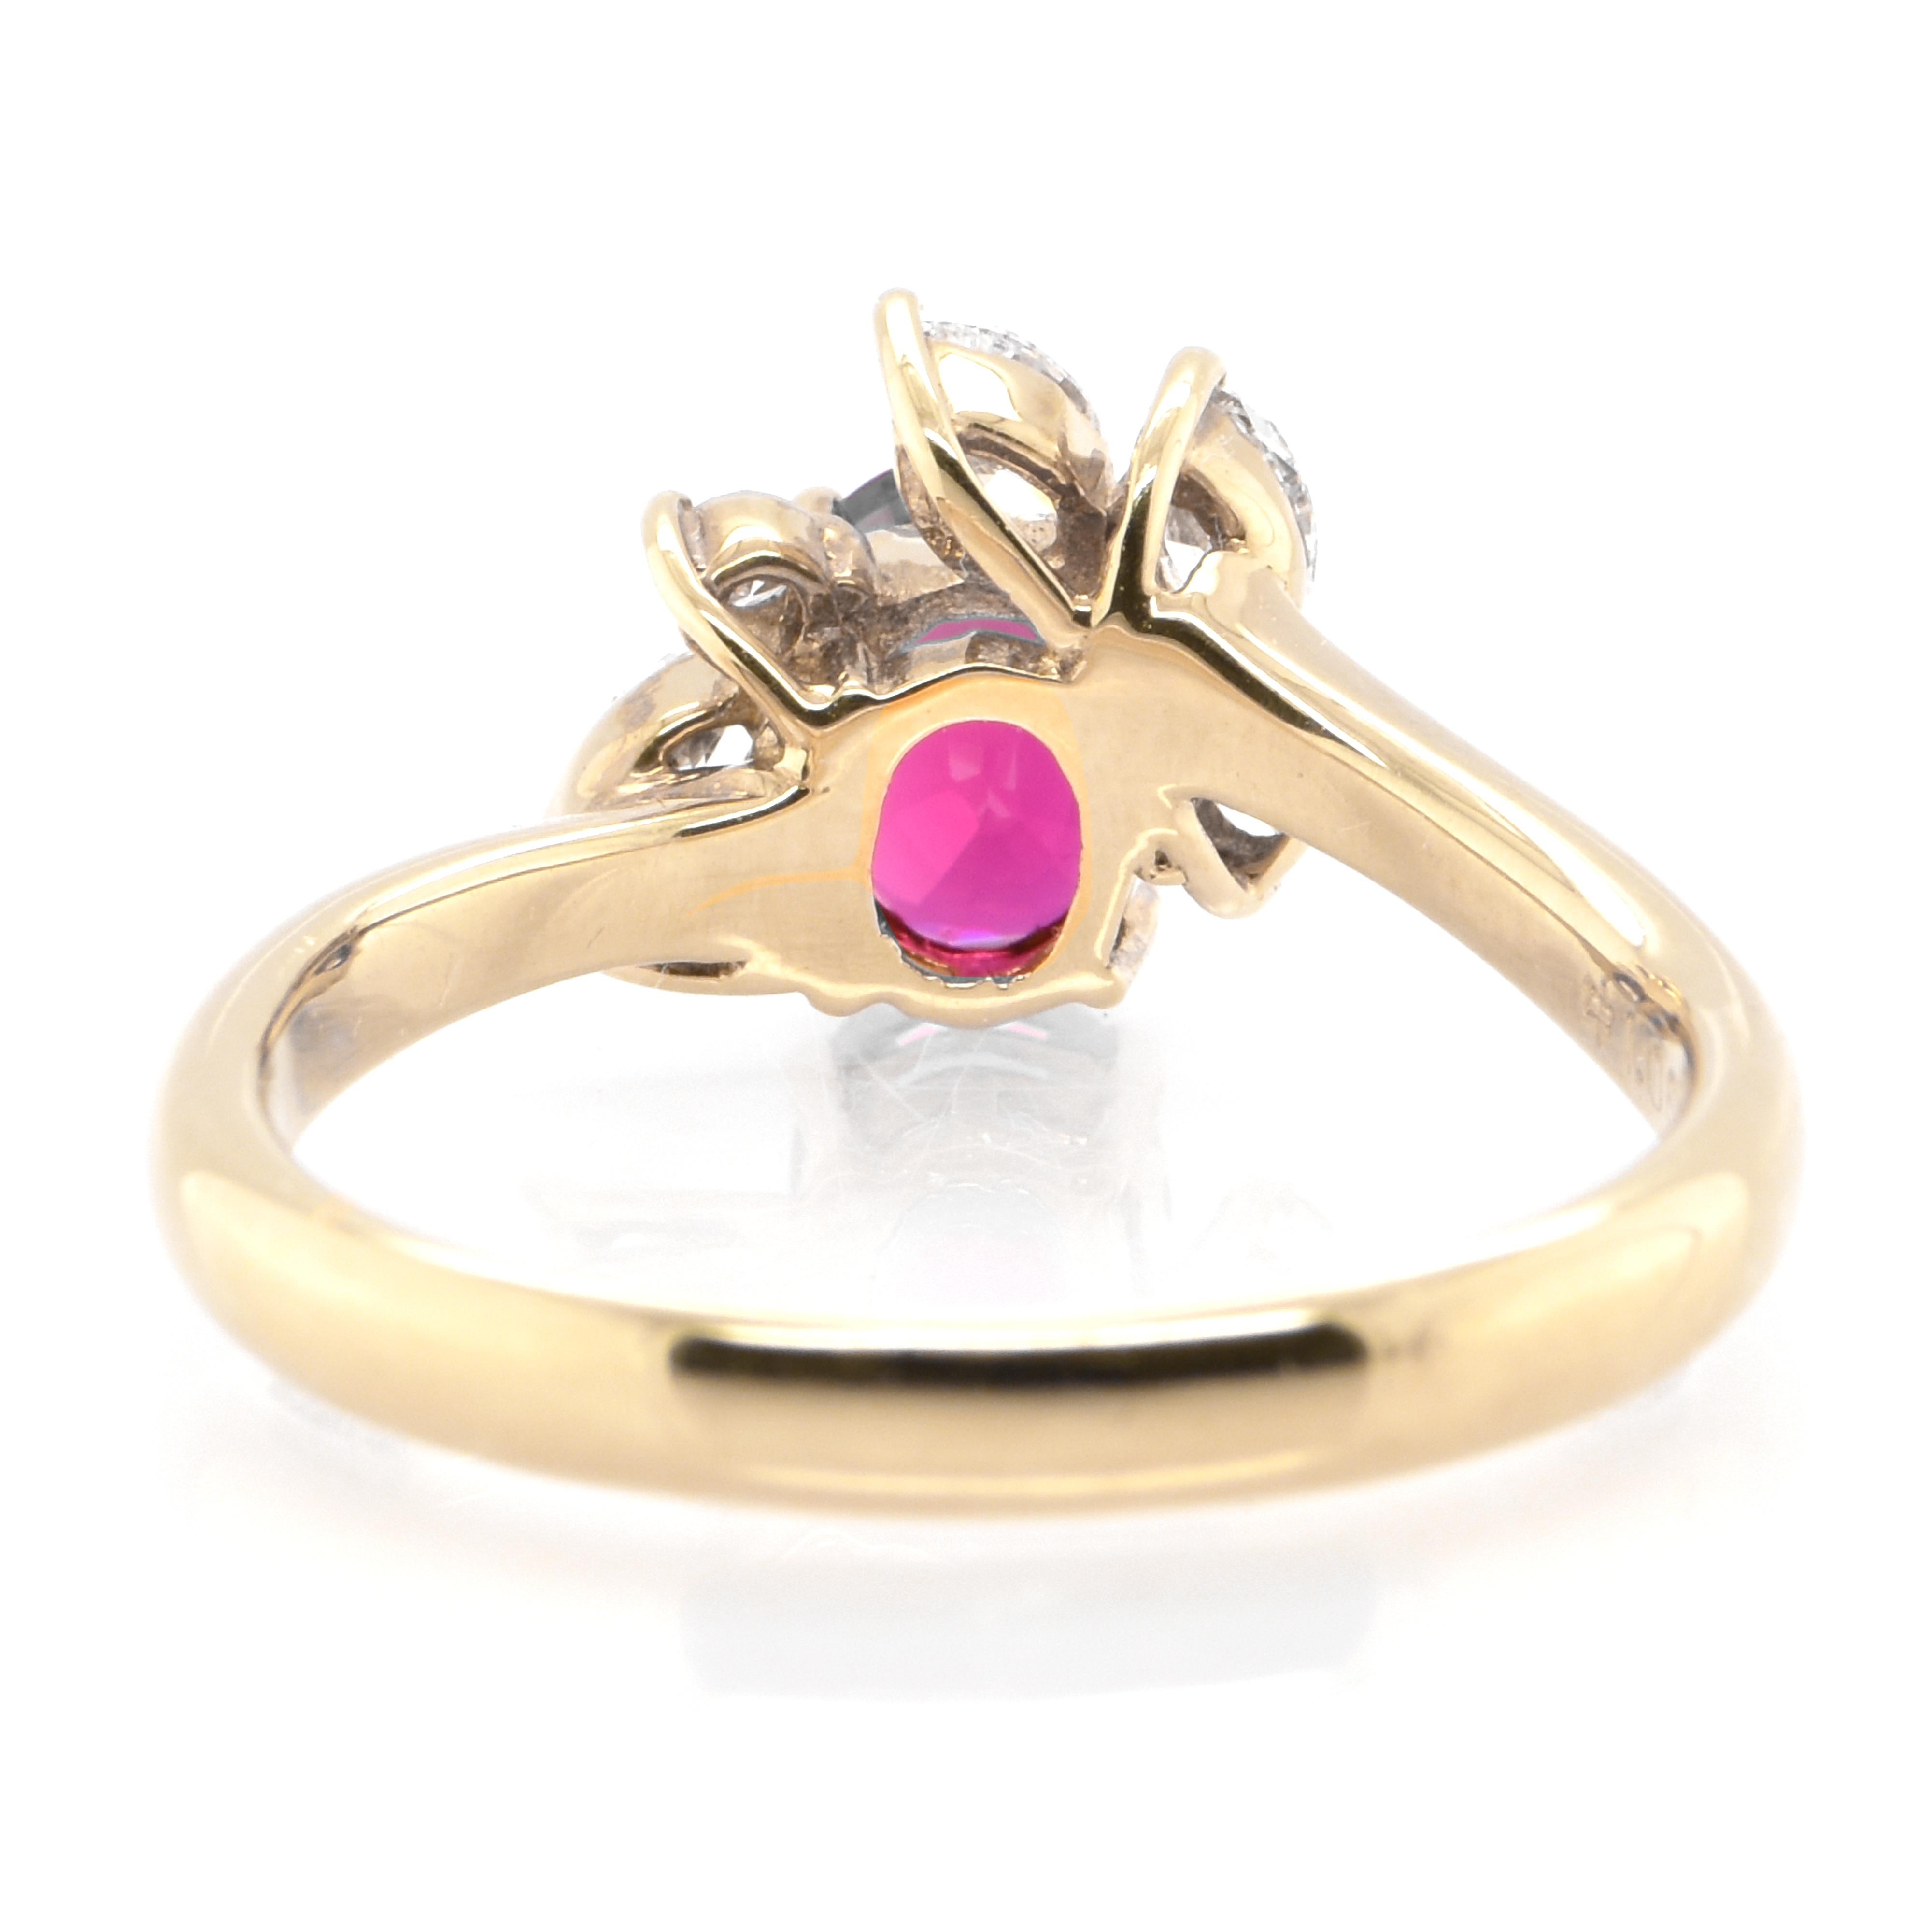 Modern 1.06 Carat Natural Ruby and Diamond Fashion Ring Set in 18 Karat Yellow Gold